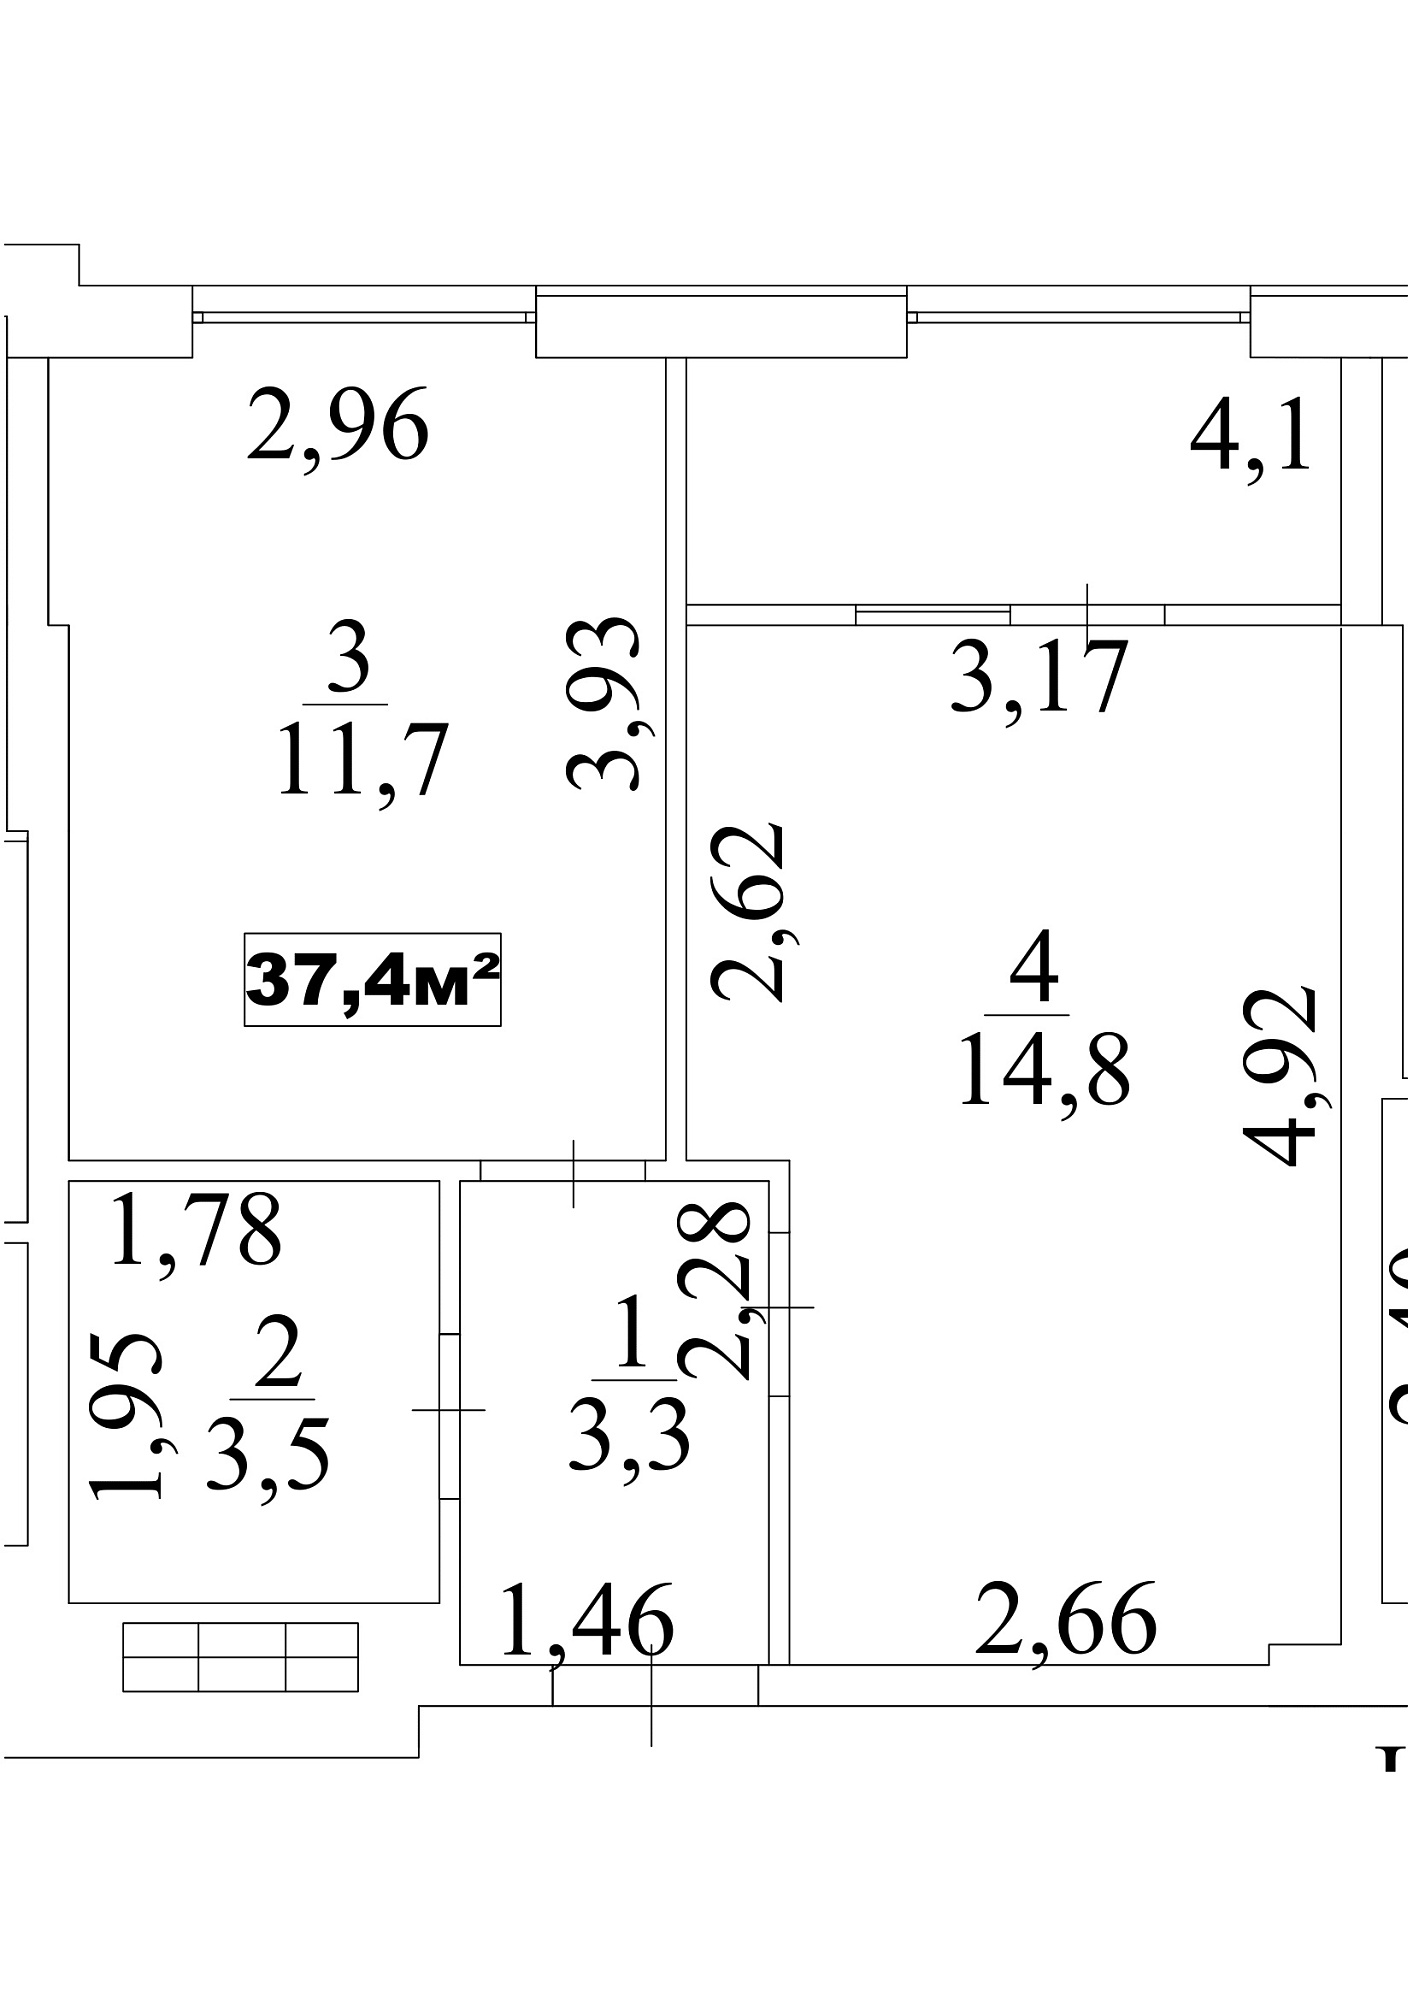 Планировка 1-к квартира площей 37.4м2, AB-10-04/00033.